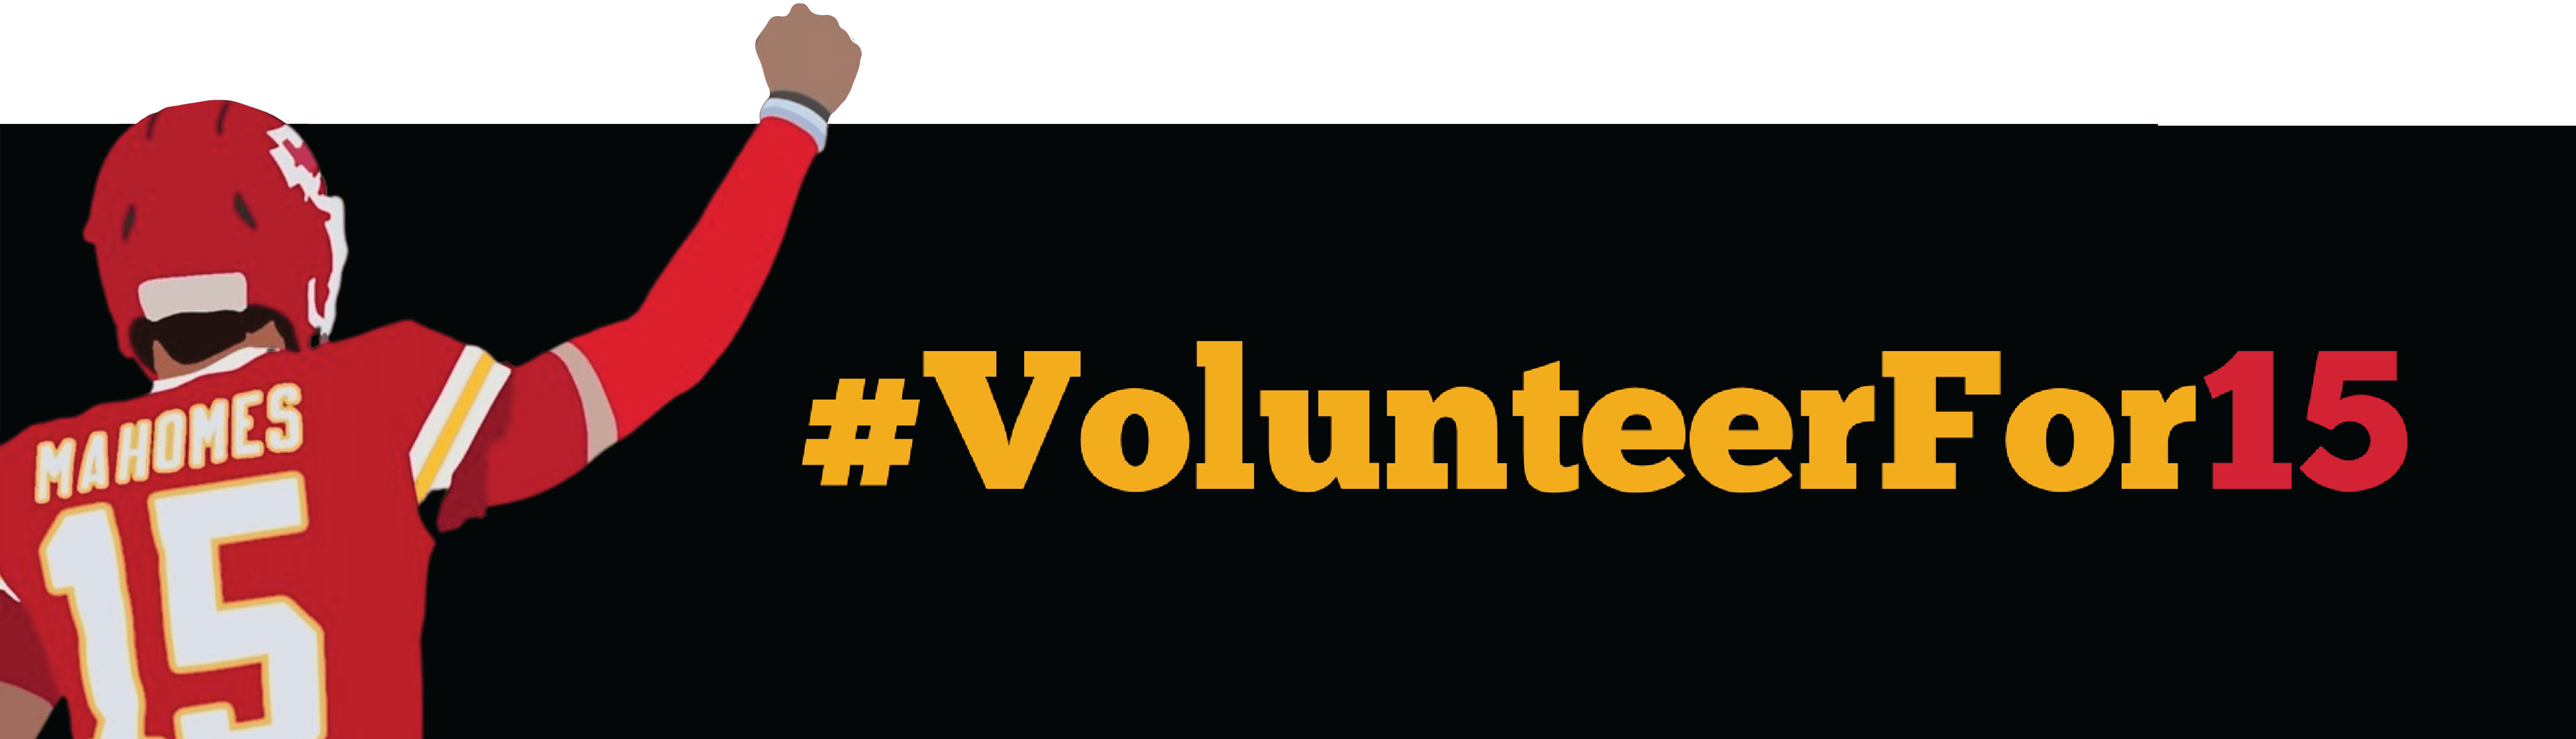 Volunteer for 15